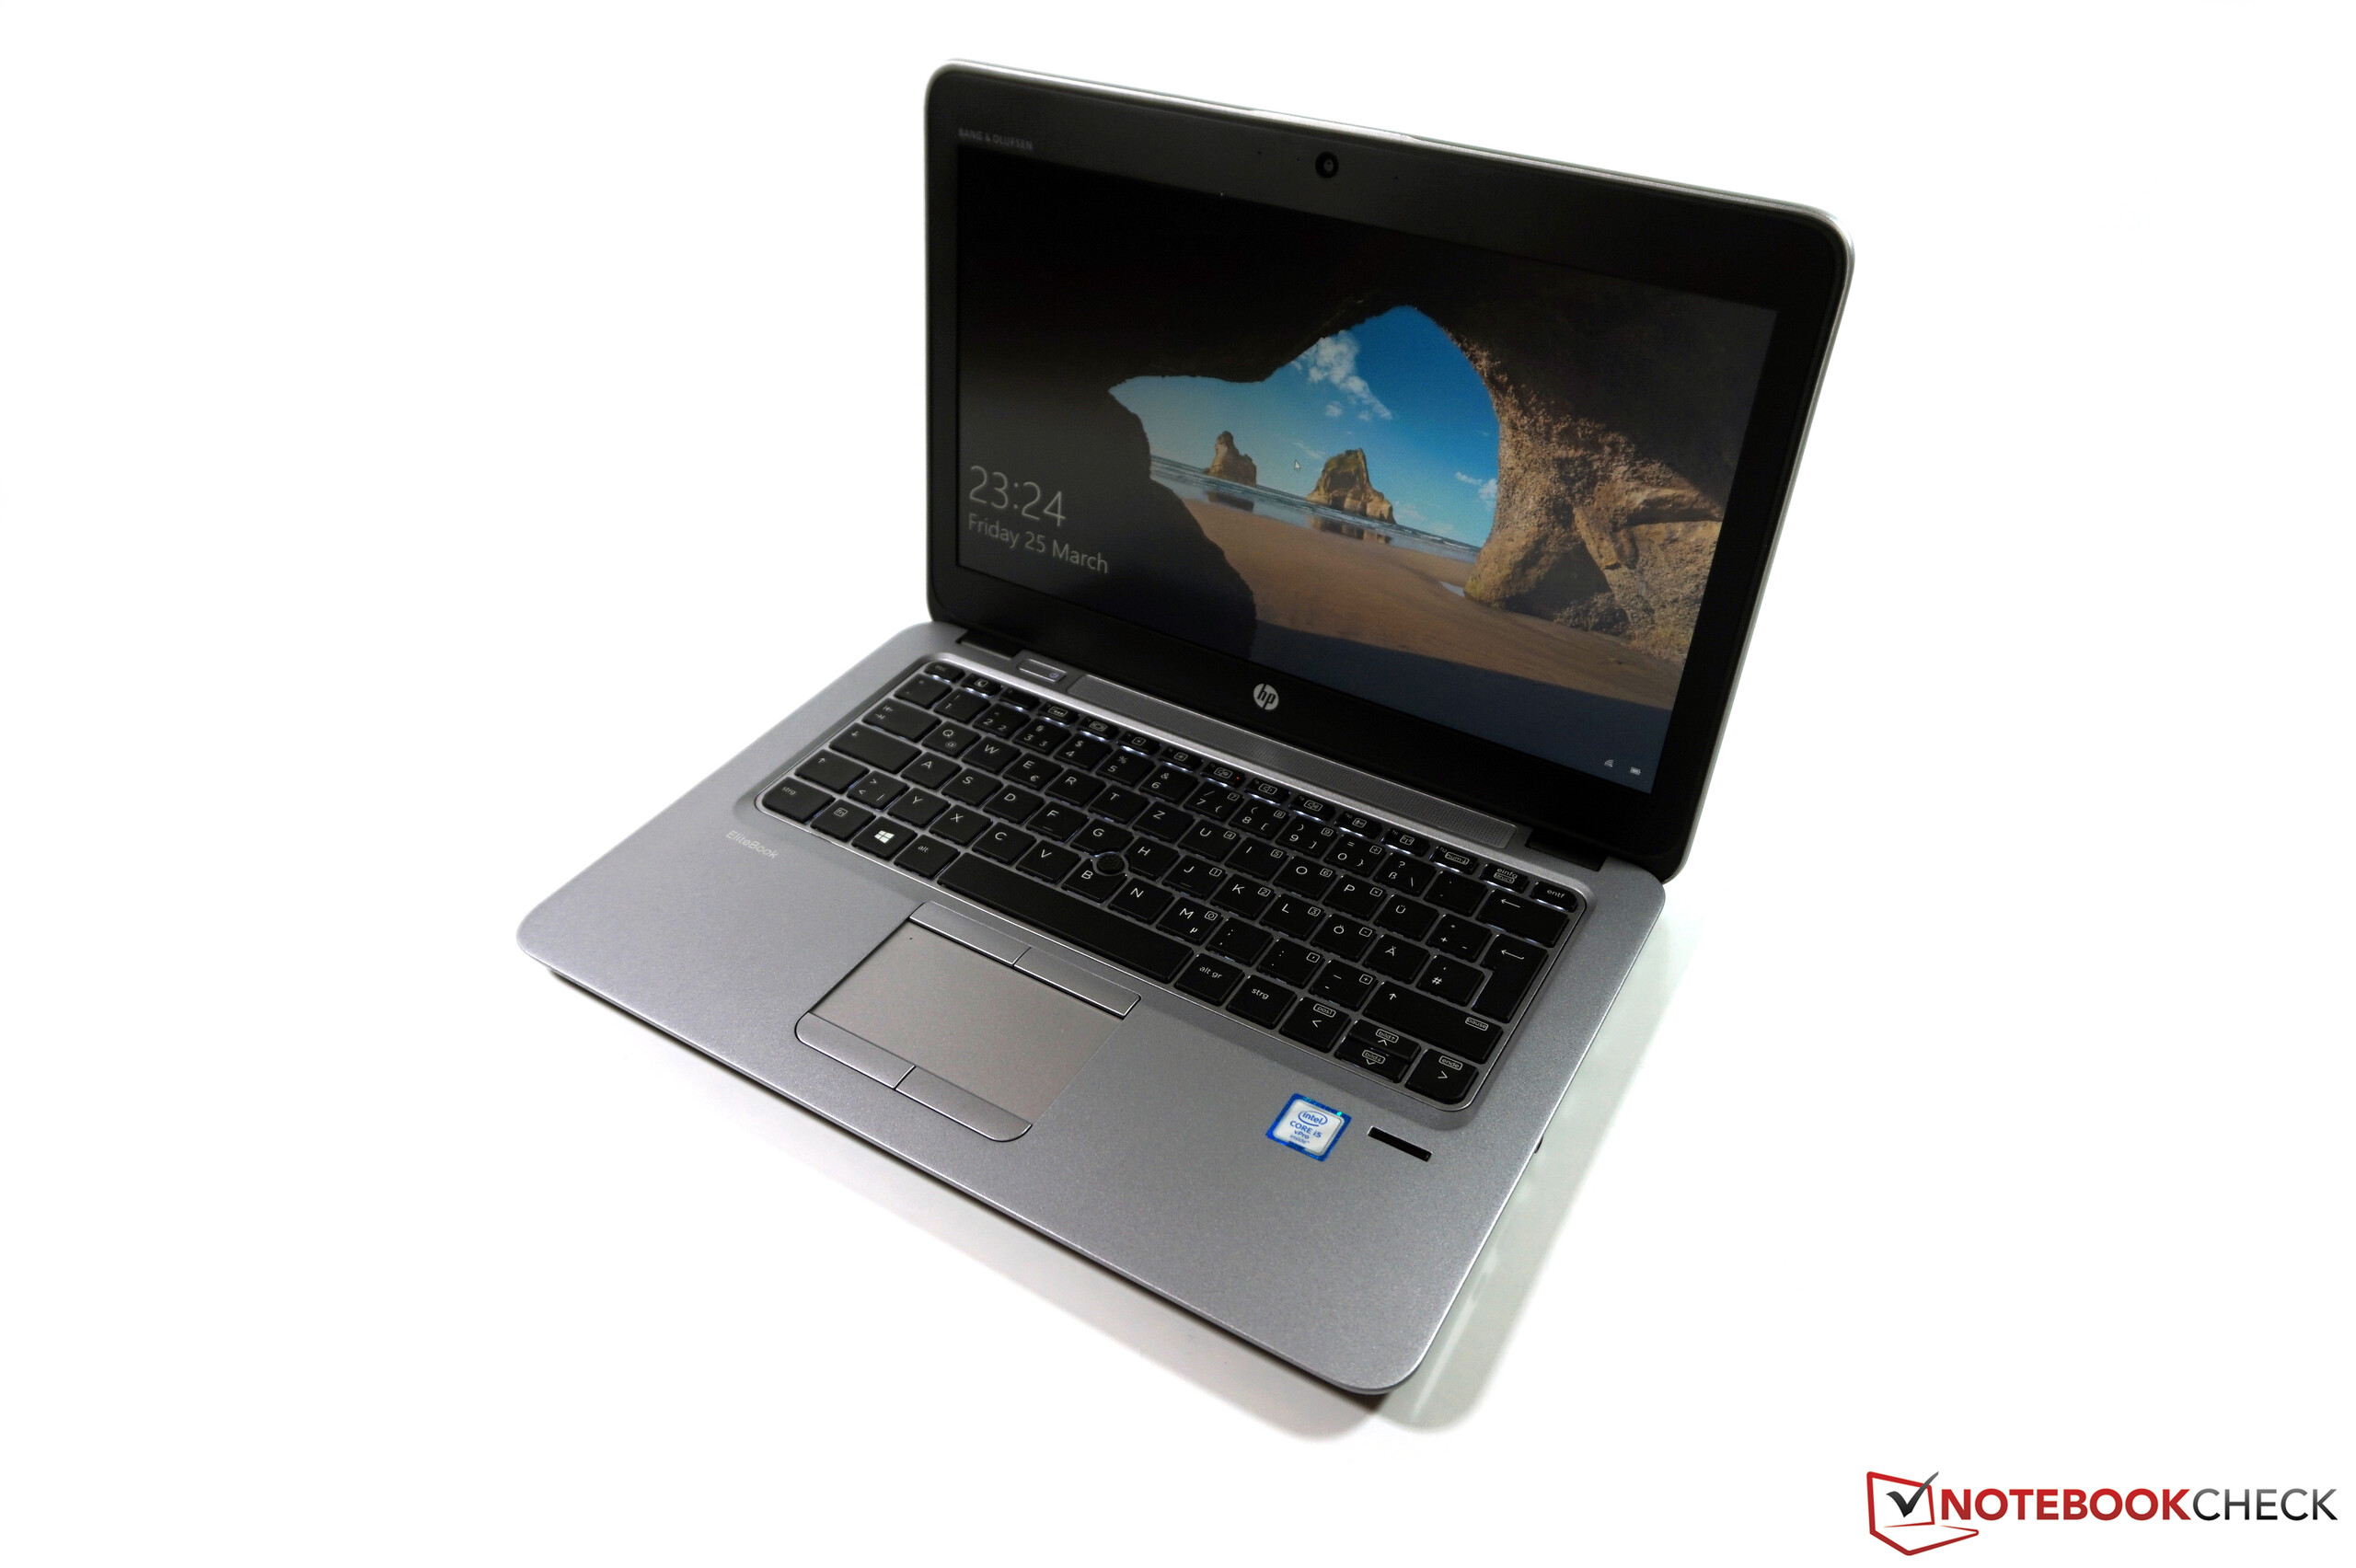 HP EliteBook 820 G3 Subnotebook Review - NotebookCheck.net Reviews